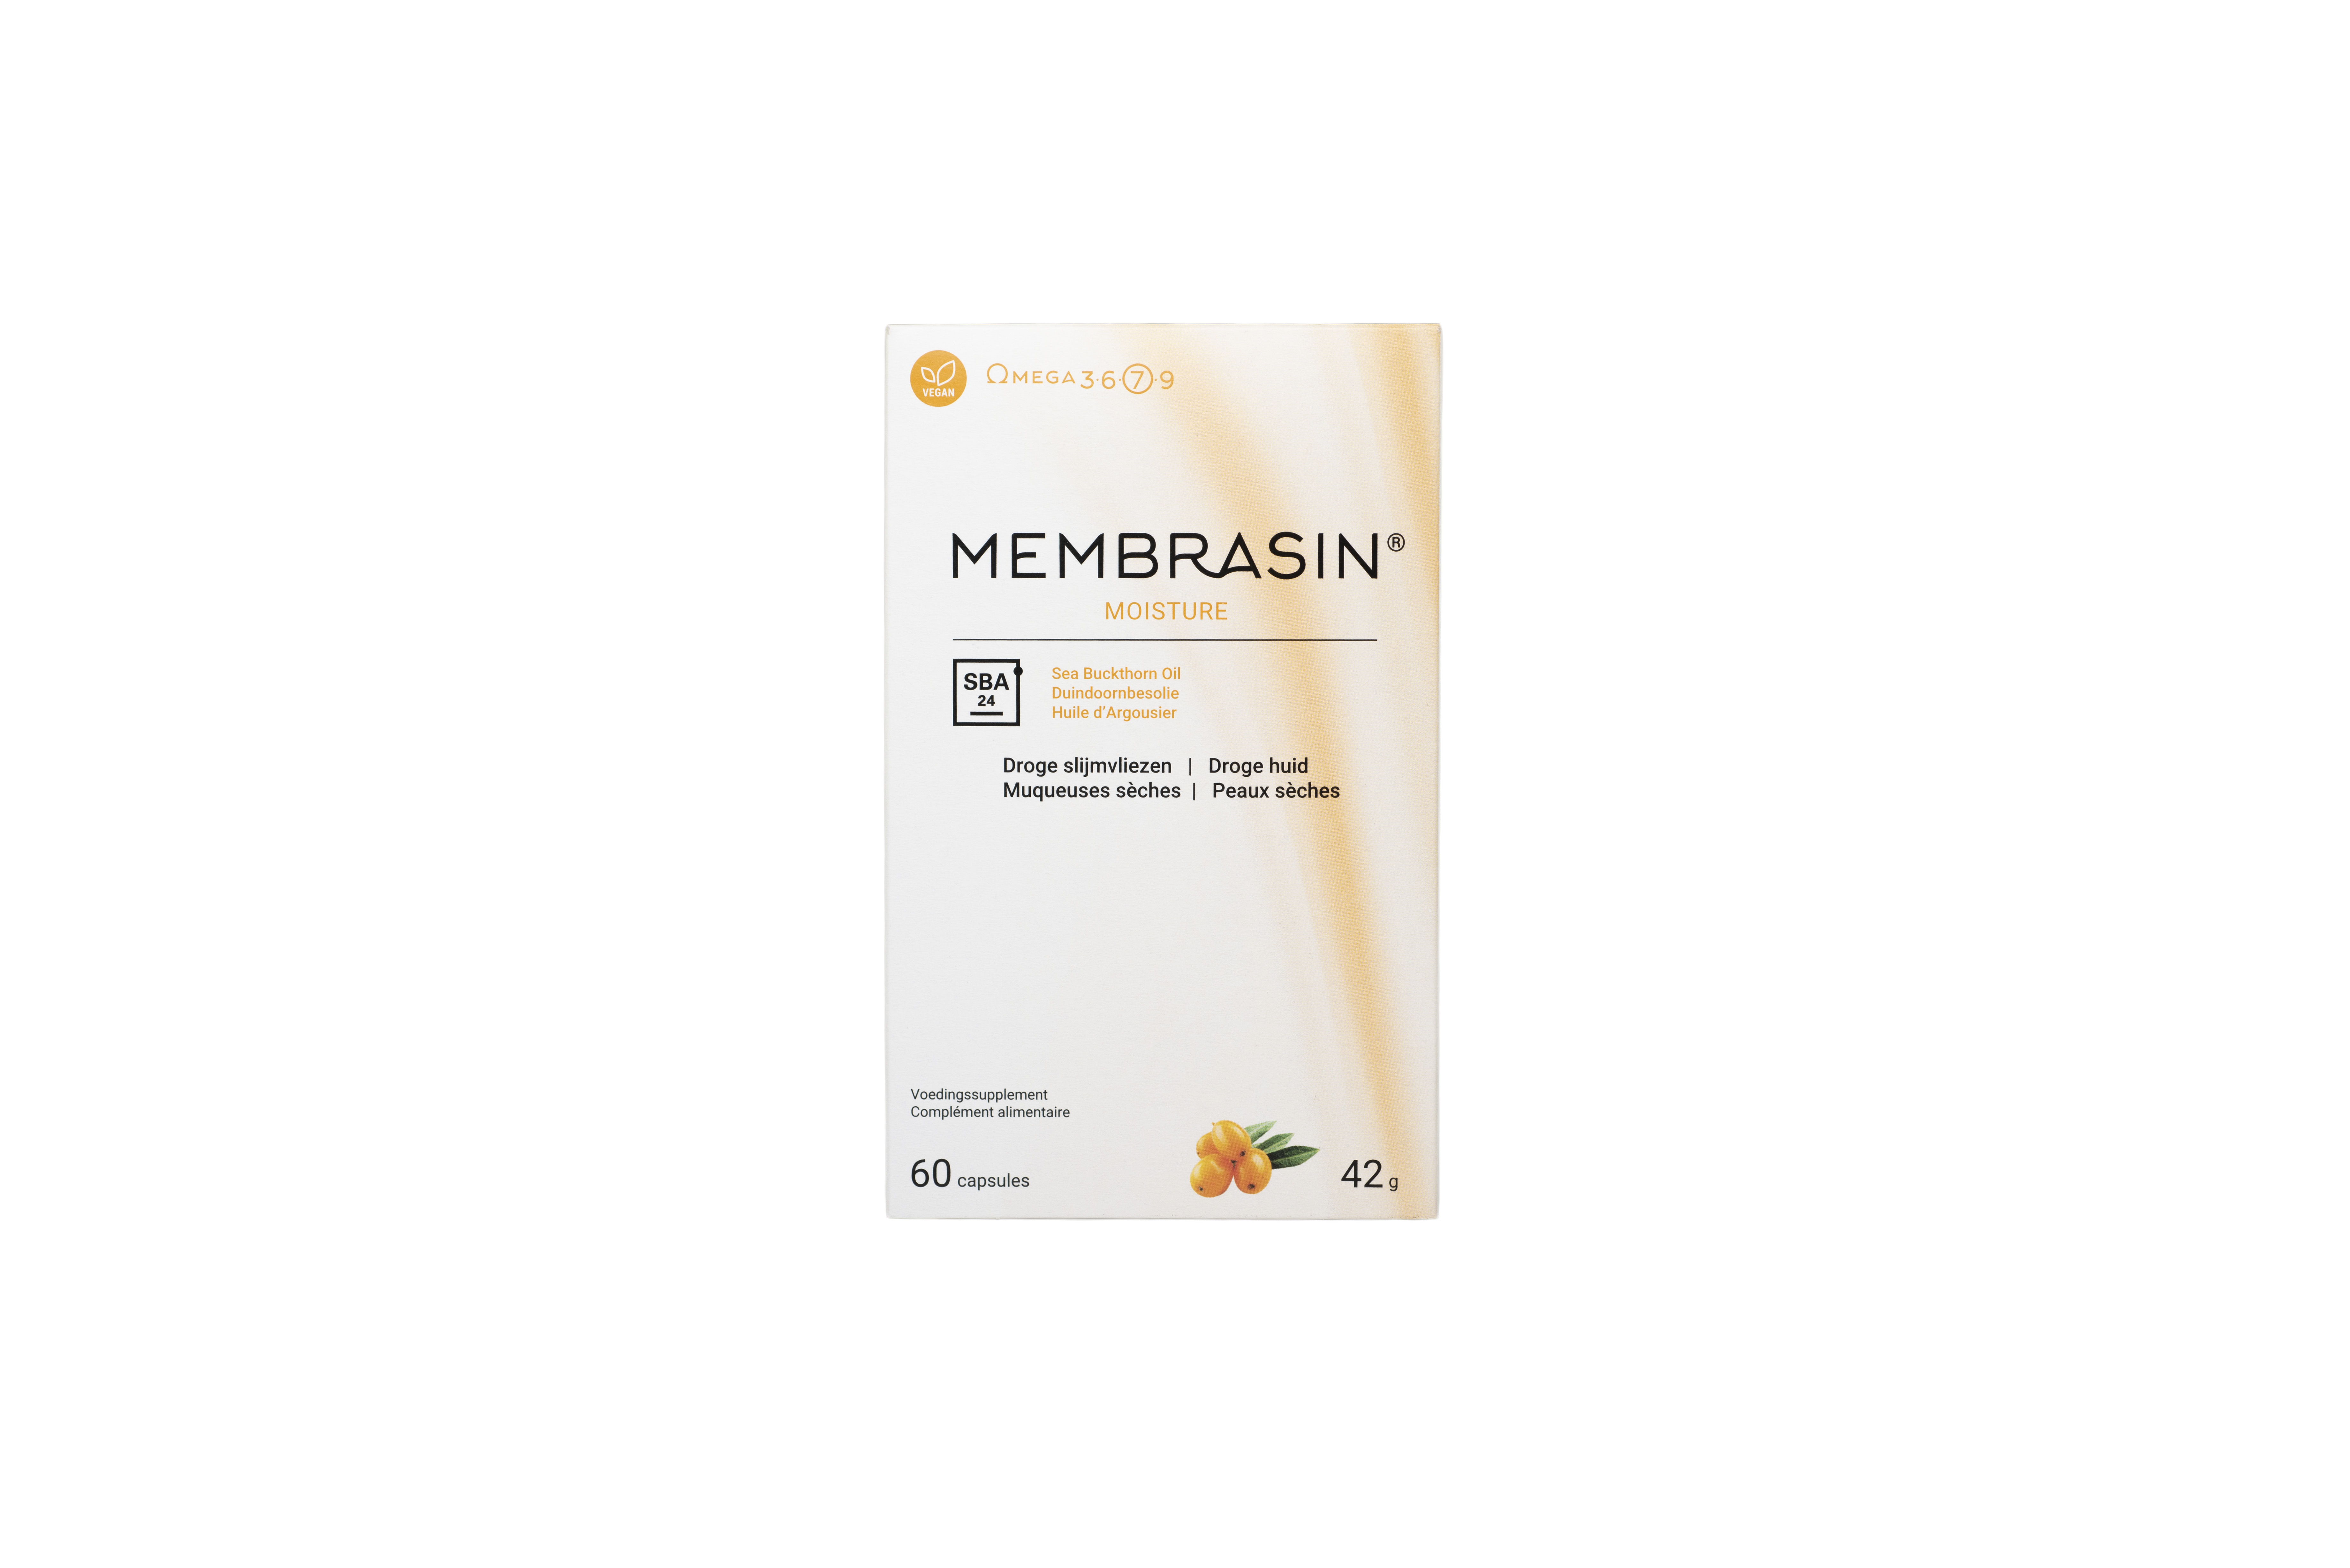 Membrasin (omega 7) 60caps PL500/52